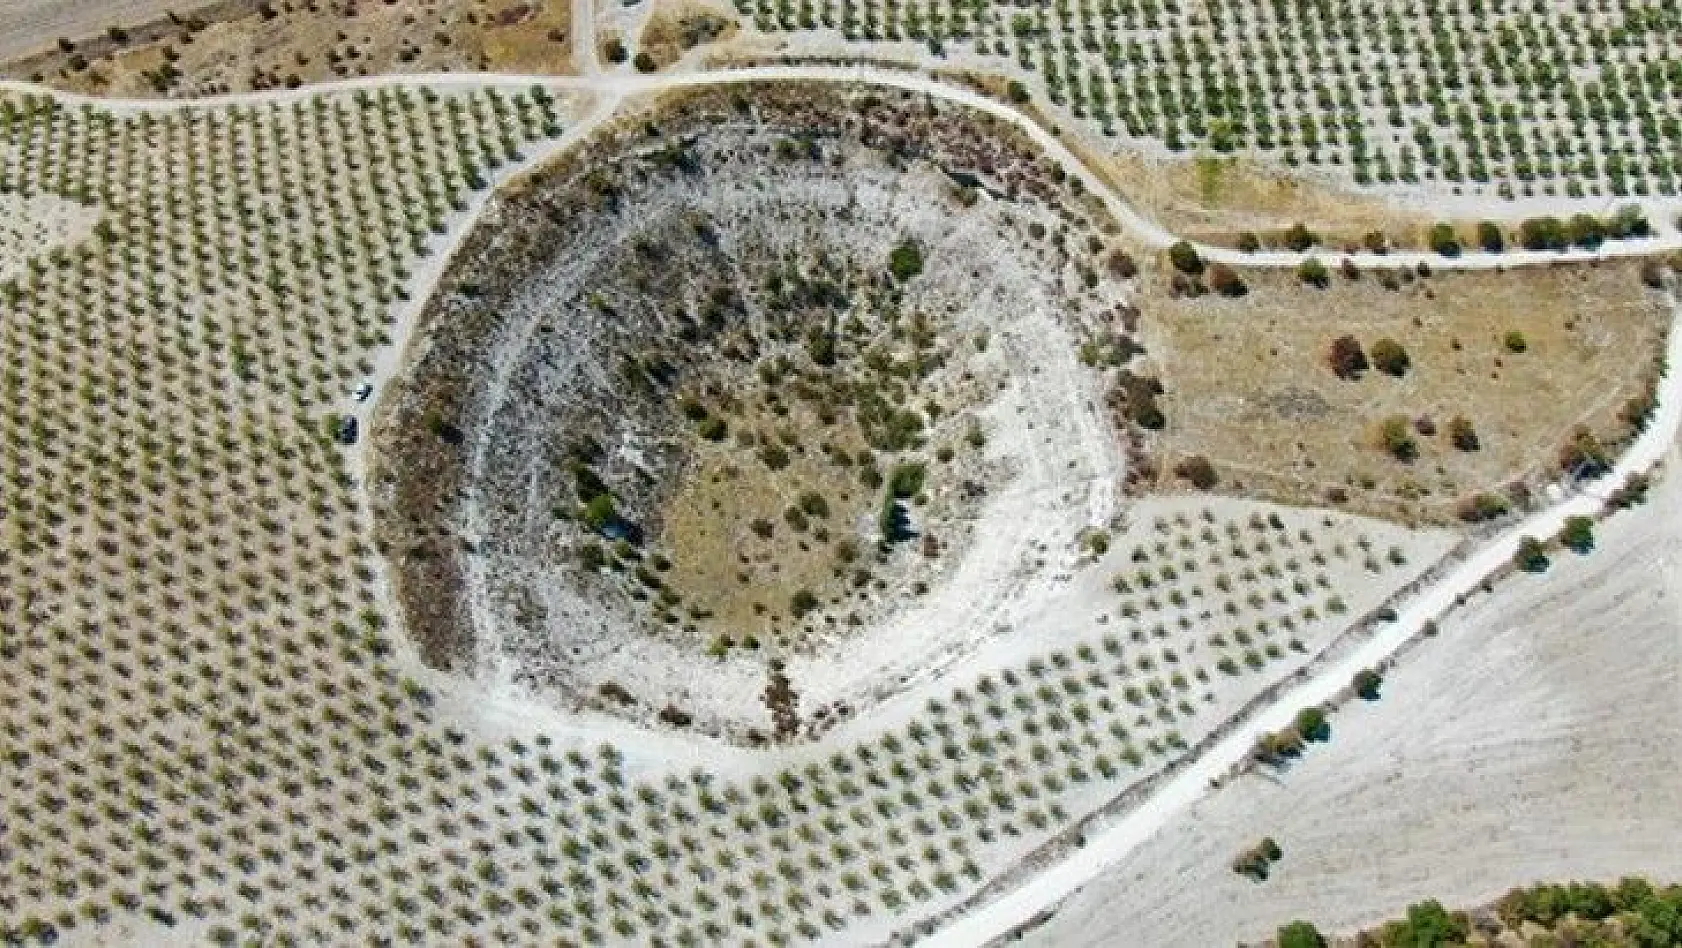 Elazığ'da bulunan 'Kup çukurunun' turizme kazandırılması isteniyor